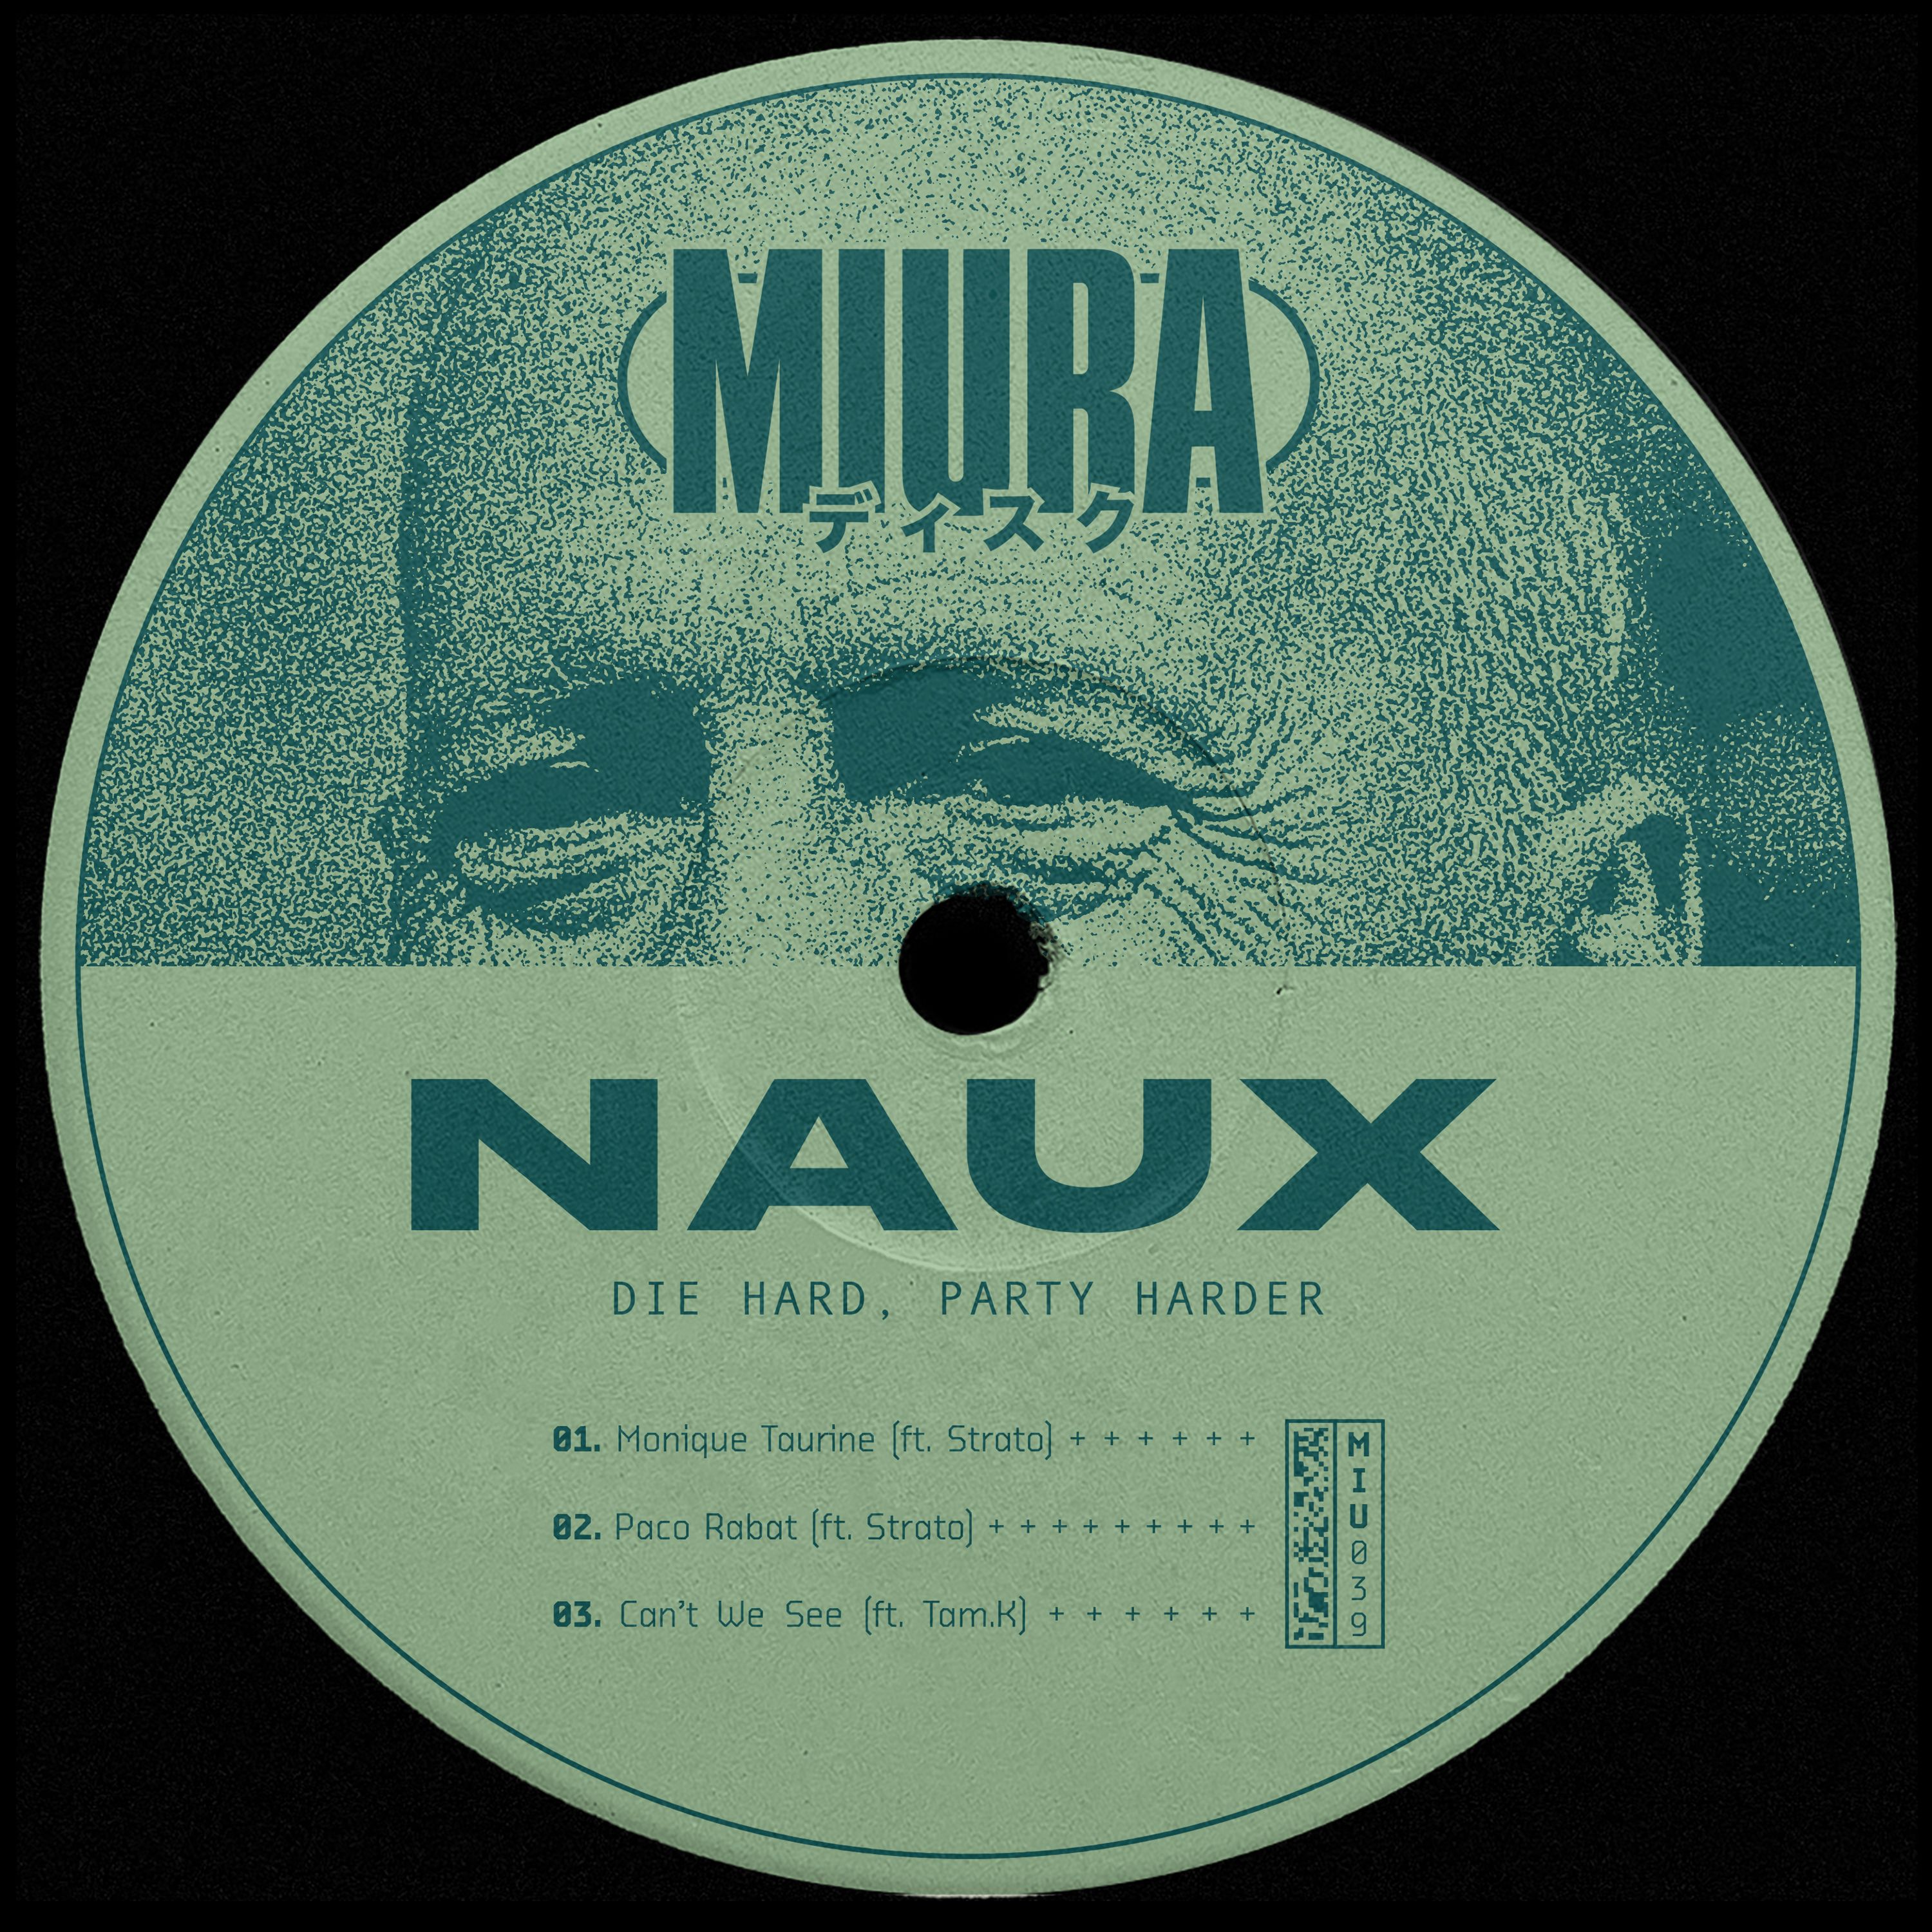 Stažení PREMIERE: Naux & Strato - Monique Taurine [Miura Records]